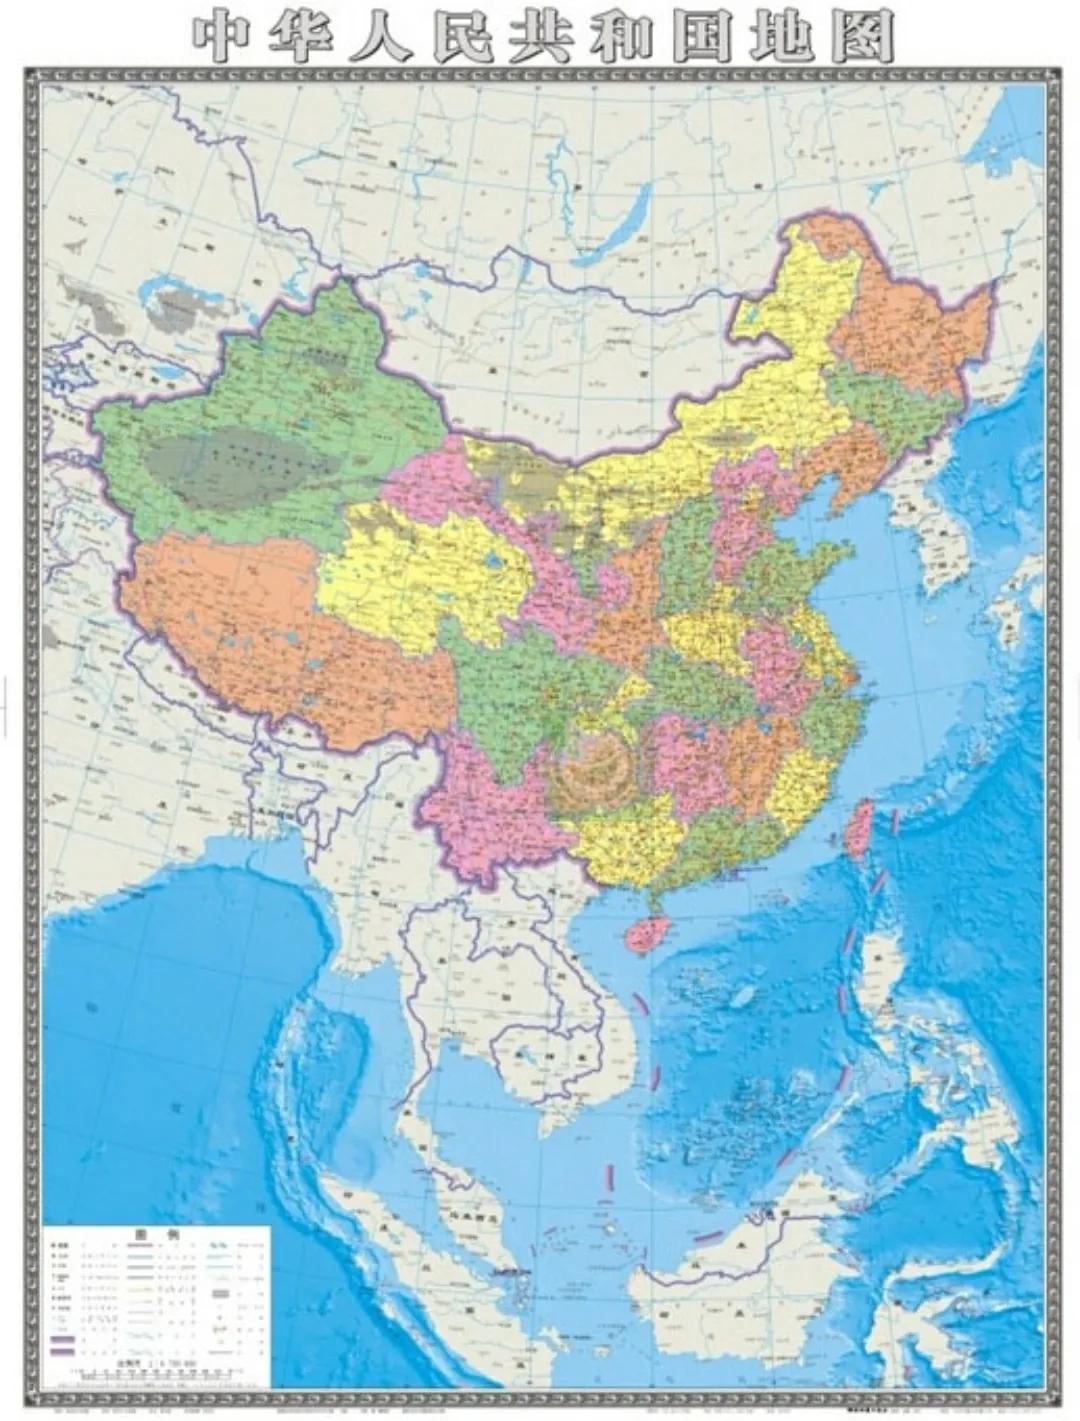 中国国土面积究竟有多大(中国和美国面积大)